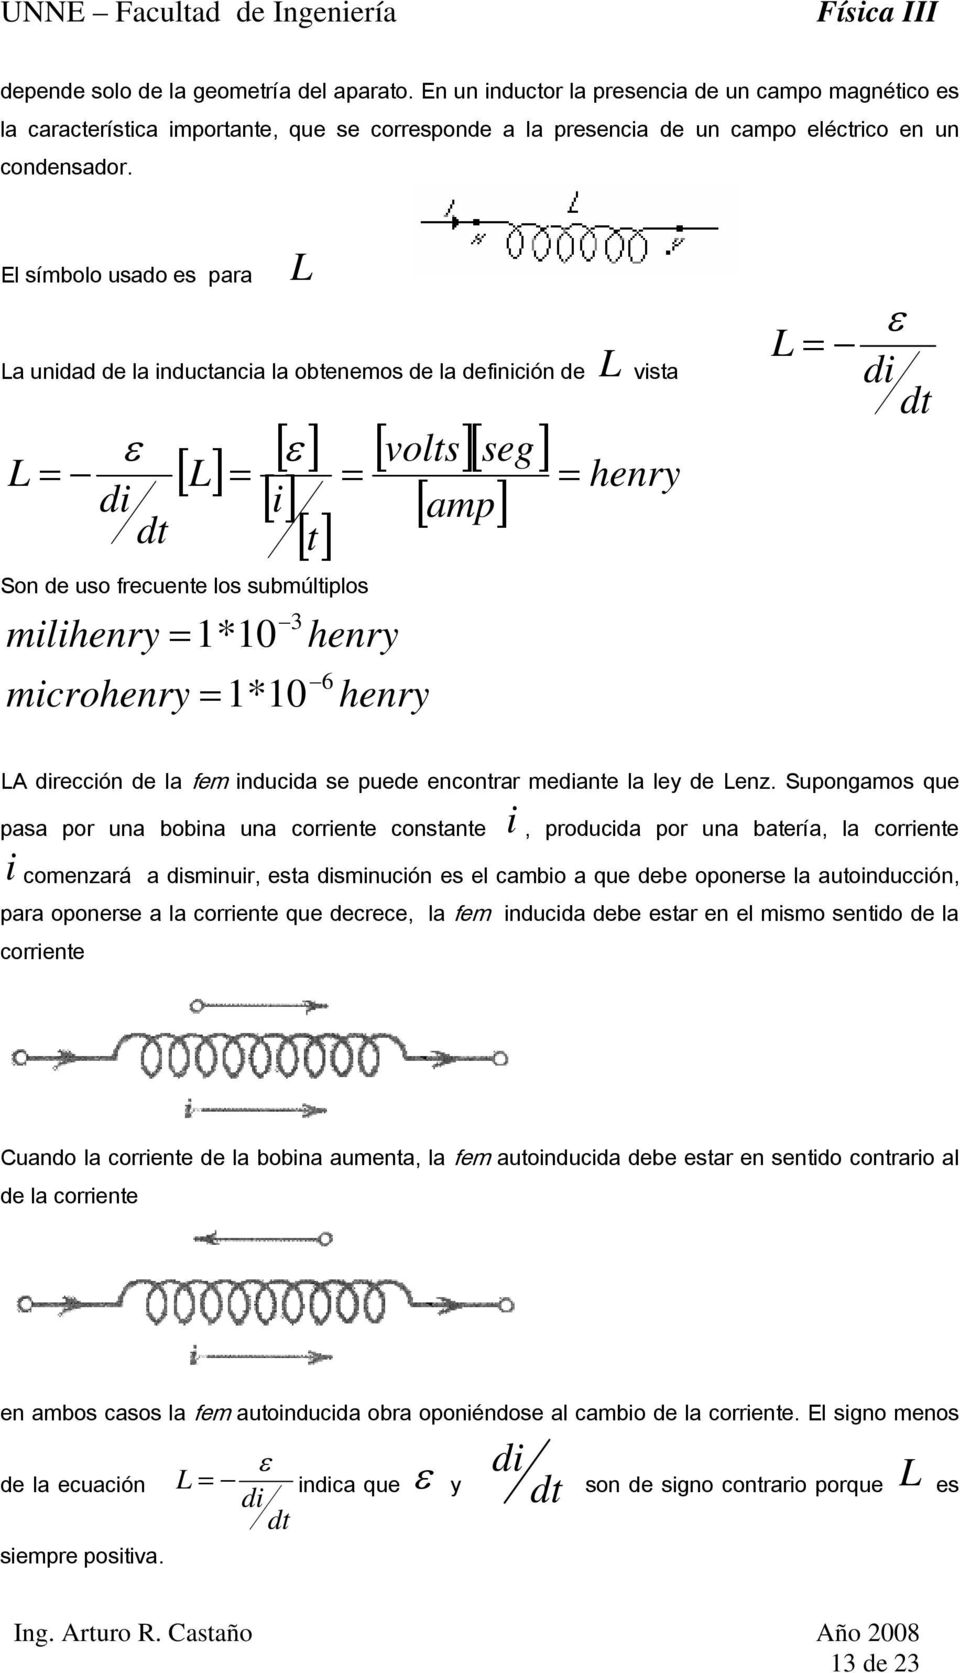 microhenry *0 henry 6 henry ε A rección de la fem inducida se puede encontrar meante la ley de enz.